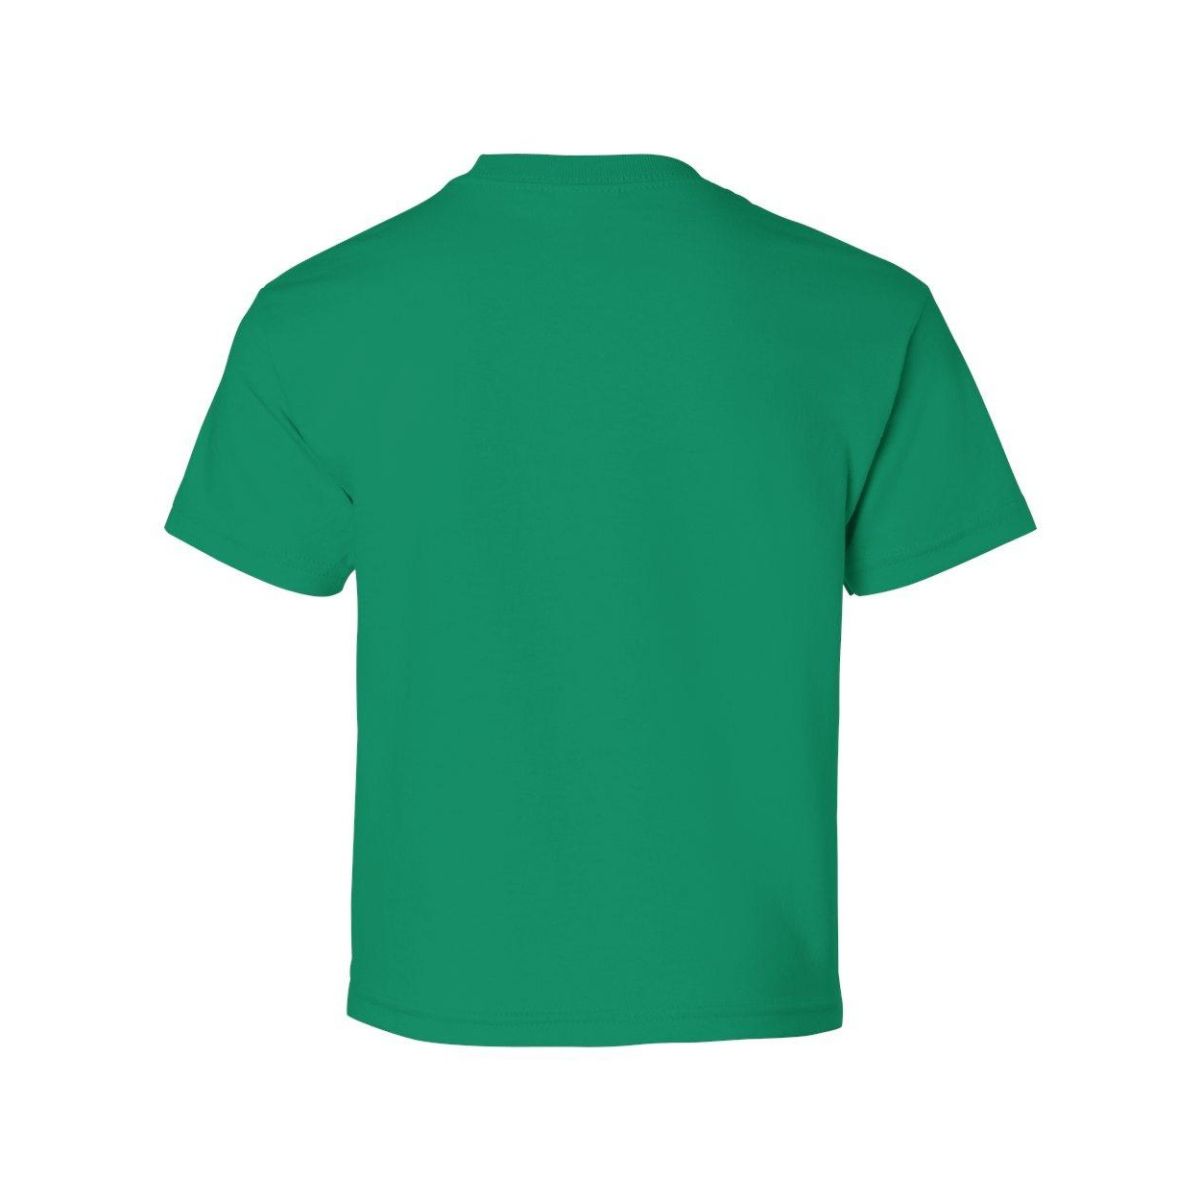 Молодёжная футболка Gildan из ультрахлопка Gildan